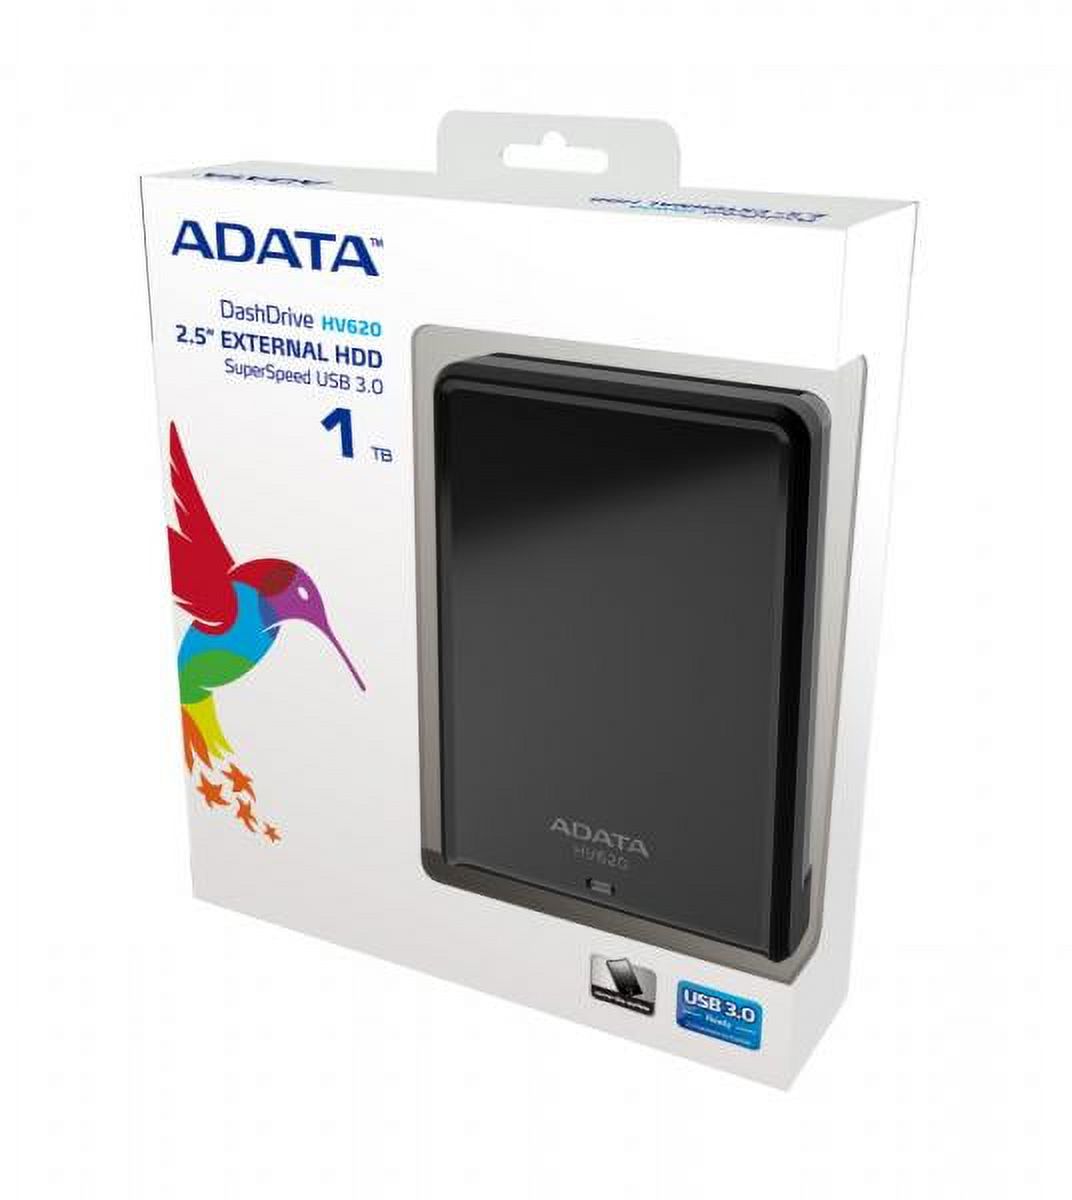 1TB AData DashDrive HV620 USB3.0 Black Portable Hard Drive - image 1 of 2